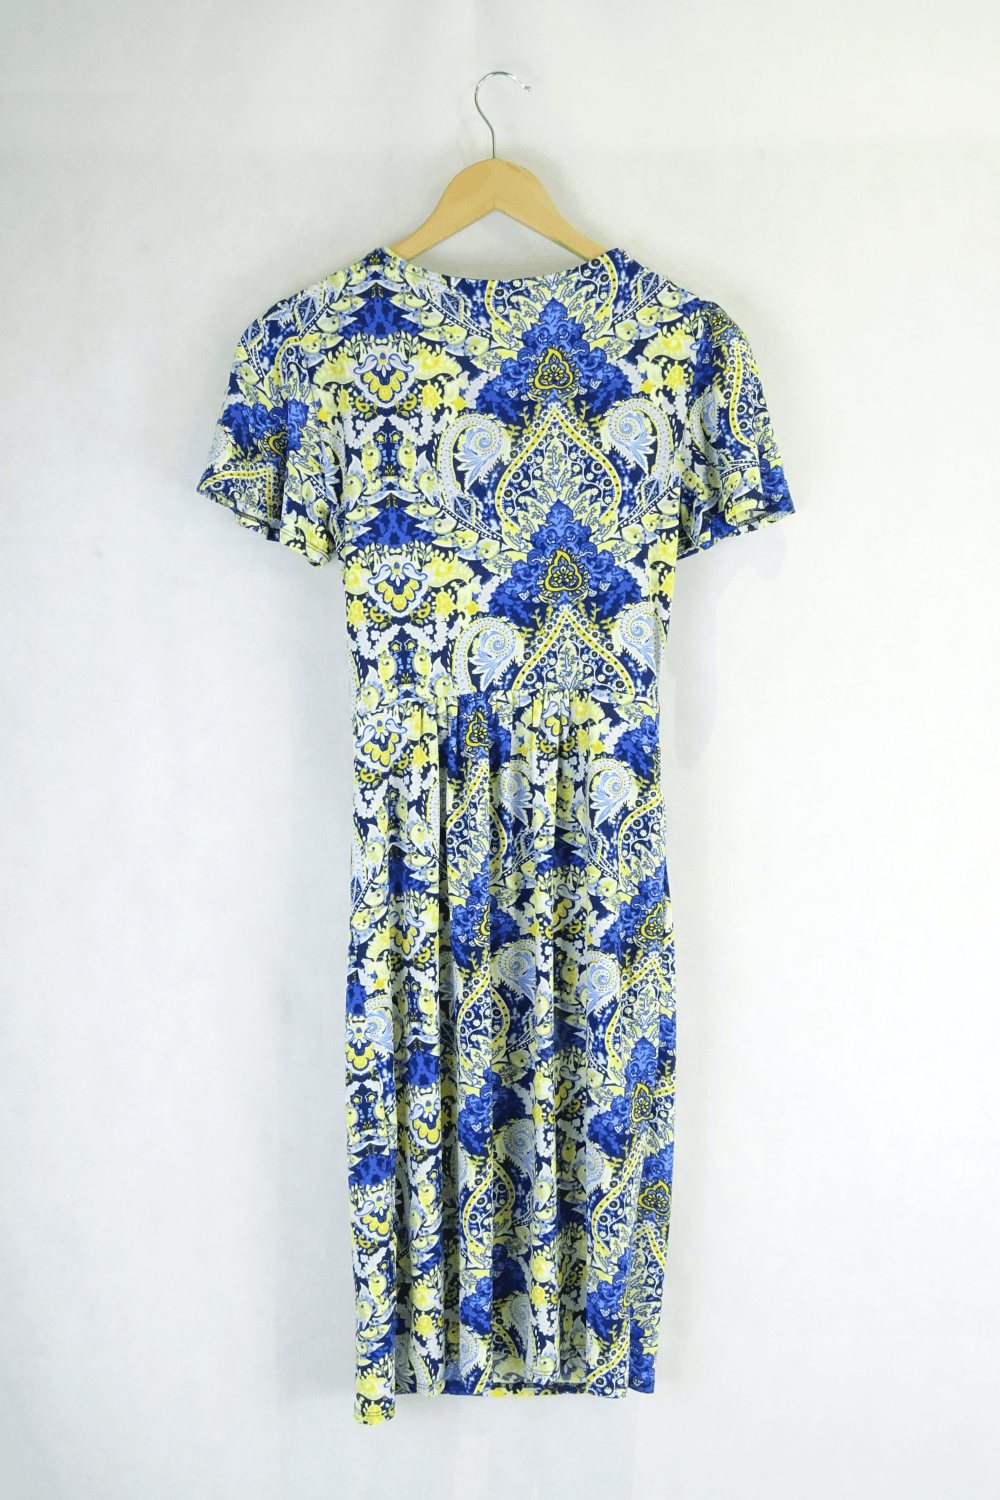 Leona Edmiston Multi Printed Dress 8